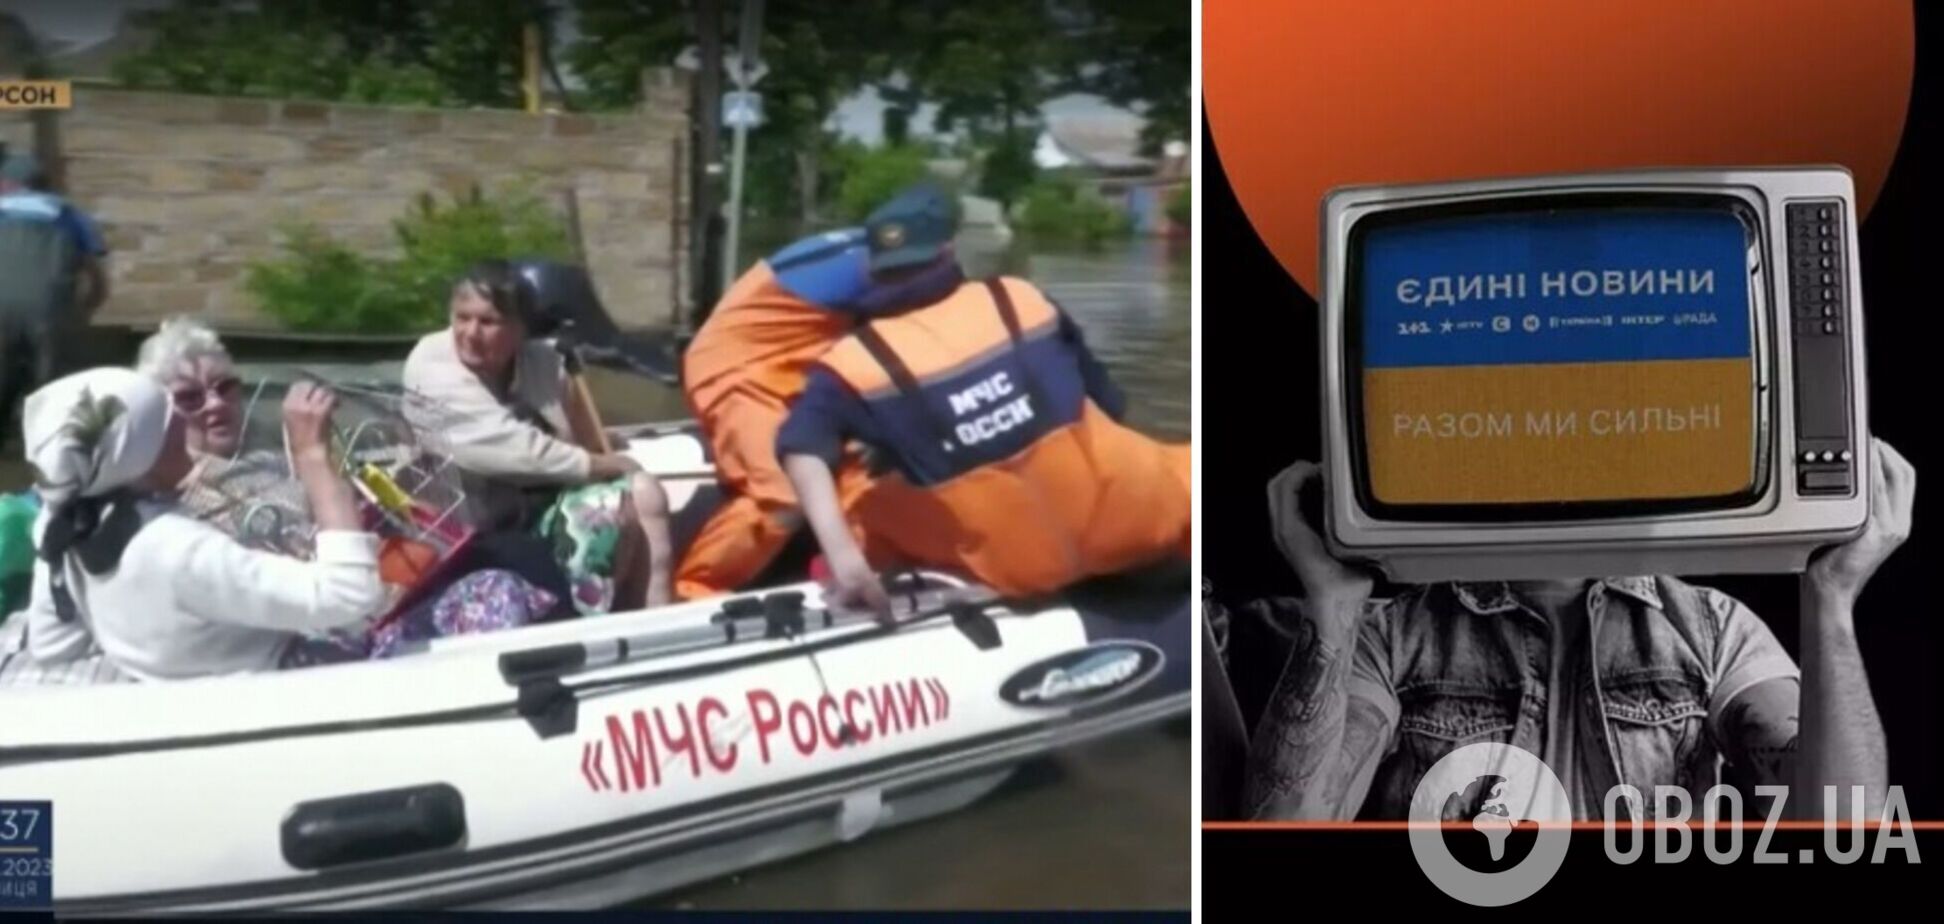 'Куратор' телемарафона неубедительно оправдался за пиар спасателей из 'МЧС РФ' и пообещал увольнения